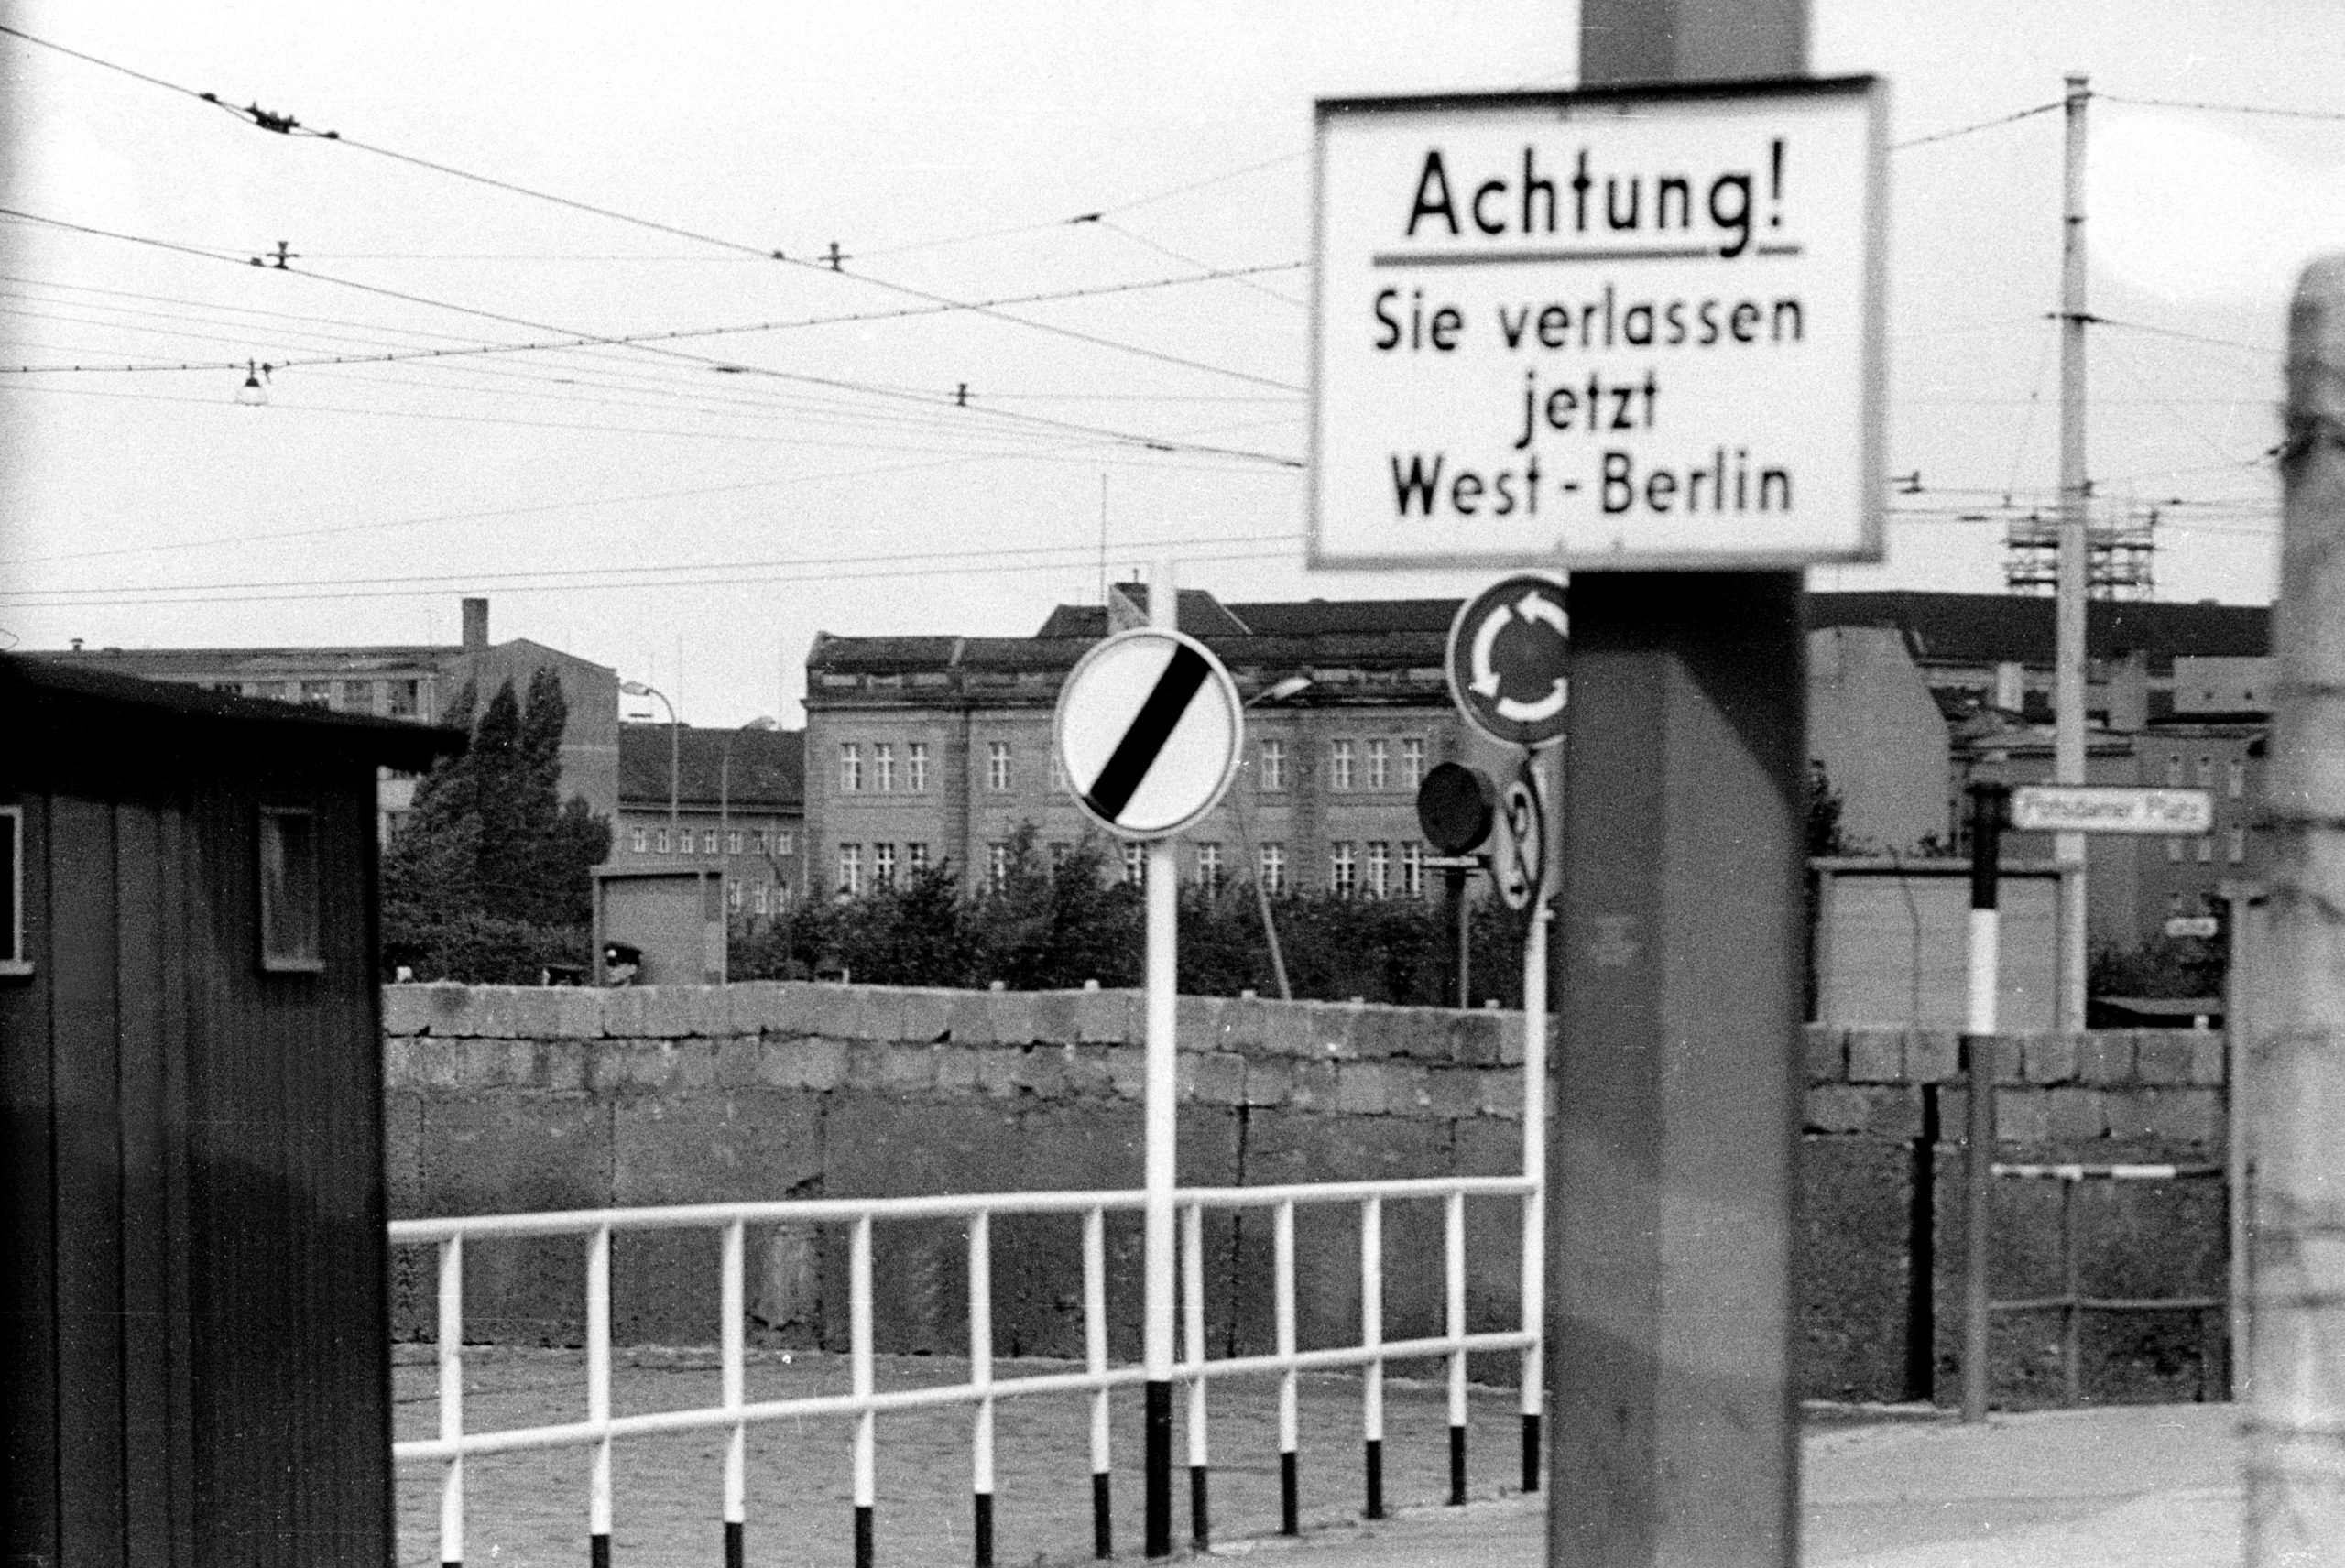 Berlin 1961: Berlin ist geteilt, aus den Zäunen wird die Mauer. Die Ära der geteilten Stadt beginnt, September 1961. Foto: Imago/Sabine Gudath